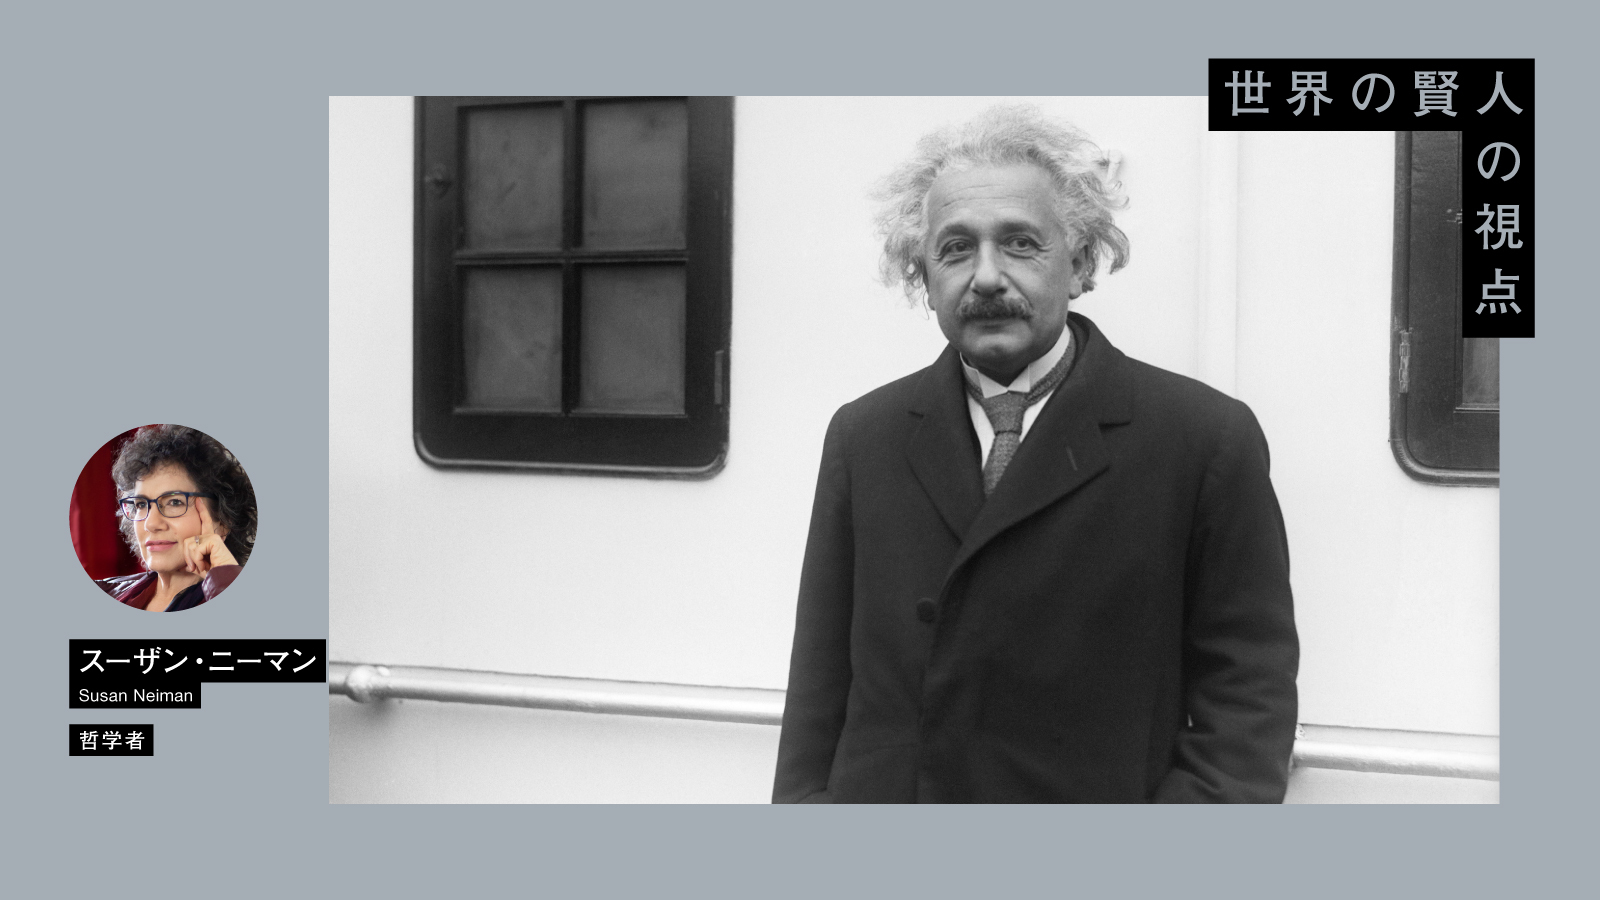 ガザ紛争にいま必要なのは「アインシュタインが訴えた協力と平和」だ | 米哲学者スーザン・ニーマンの普遍主義